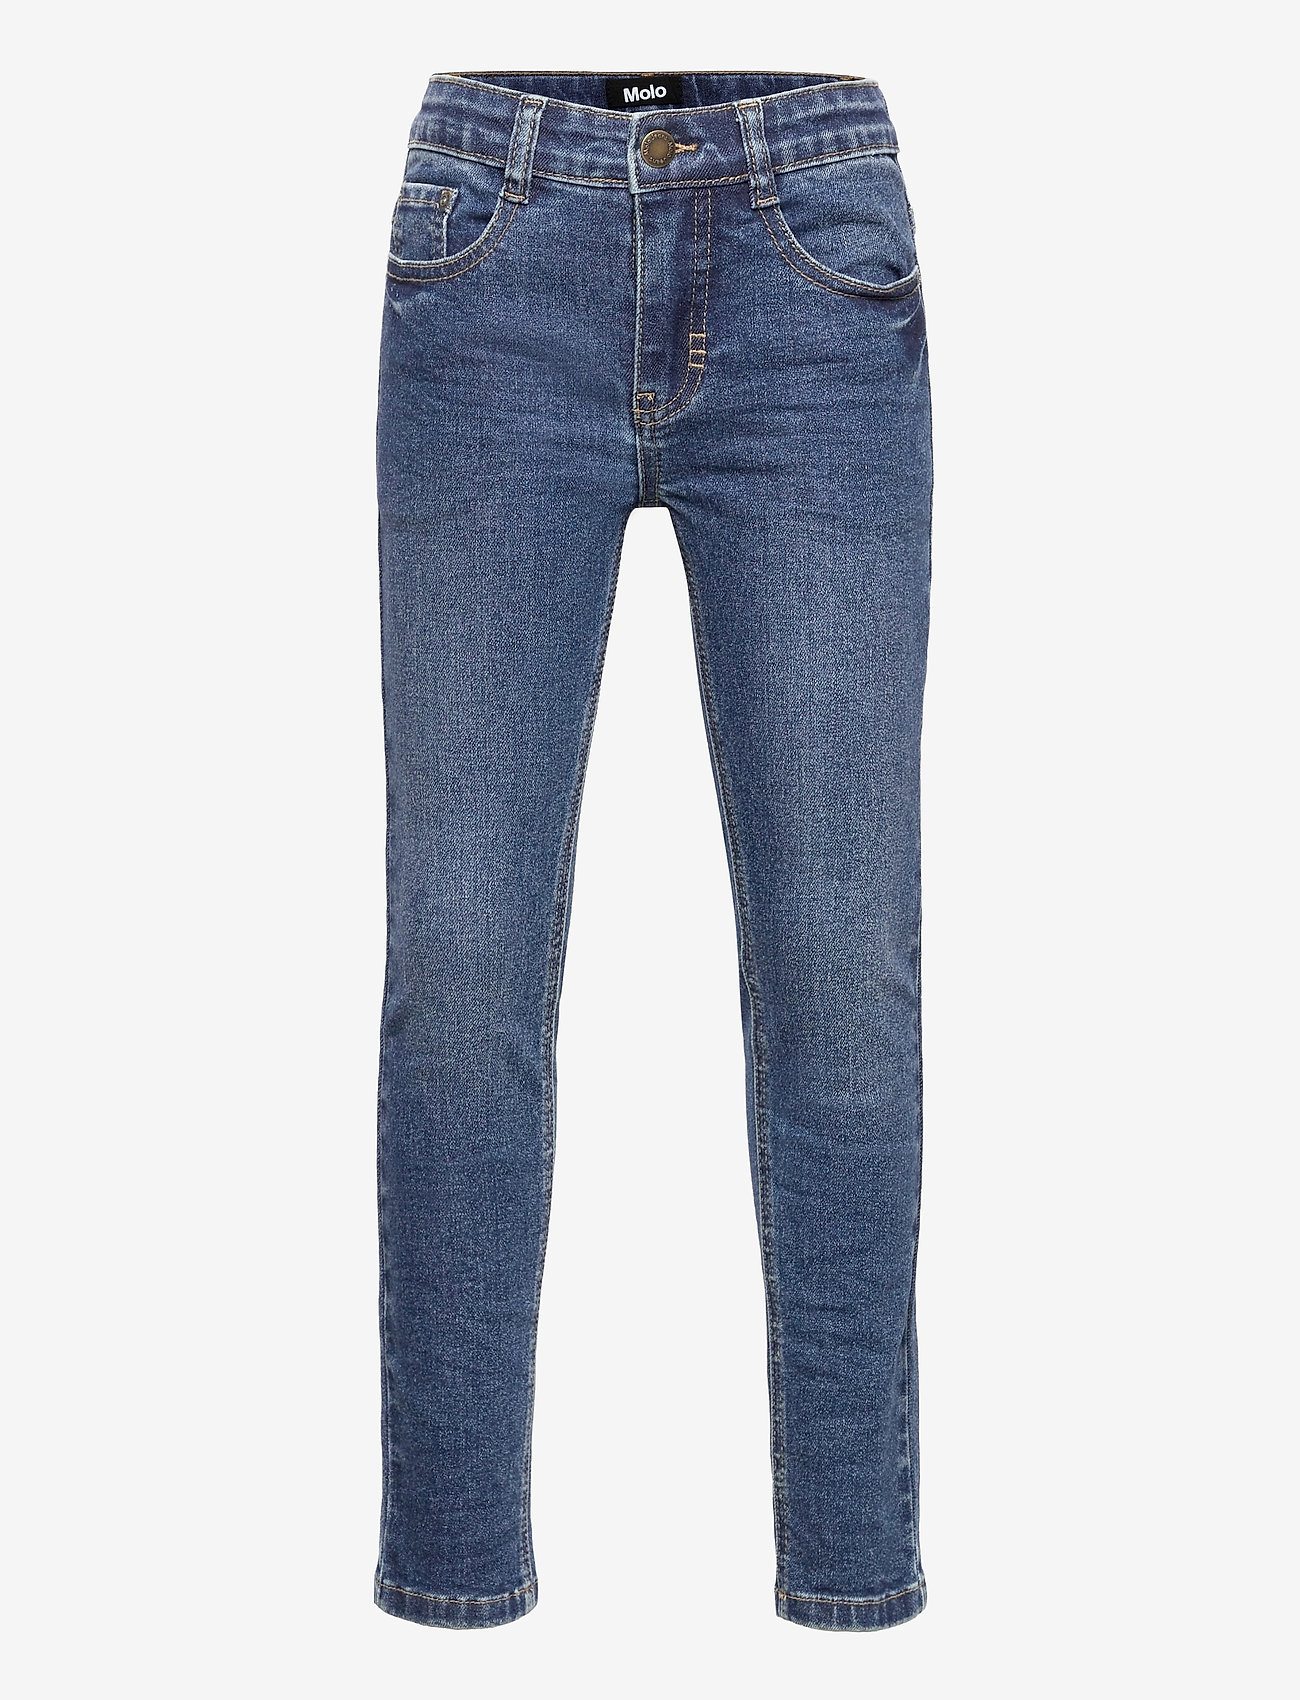 Molo Aksel - Jeans | Boozt.com